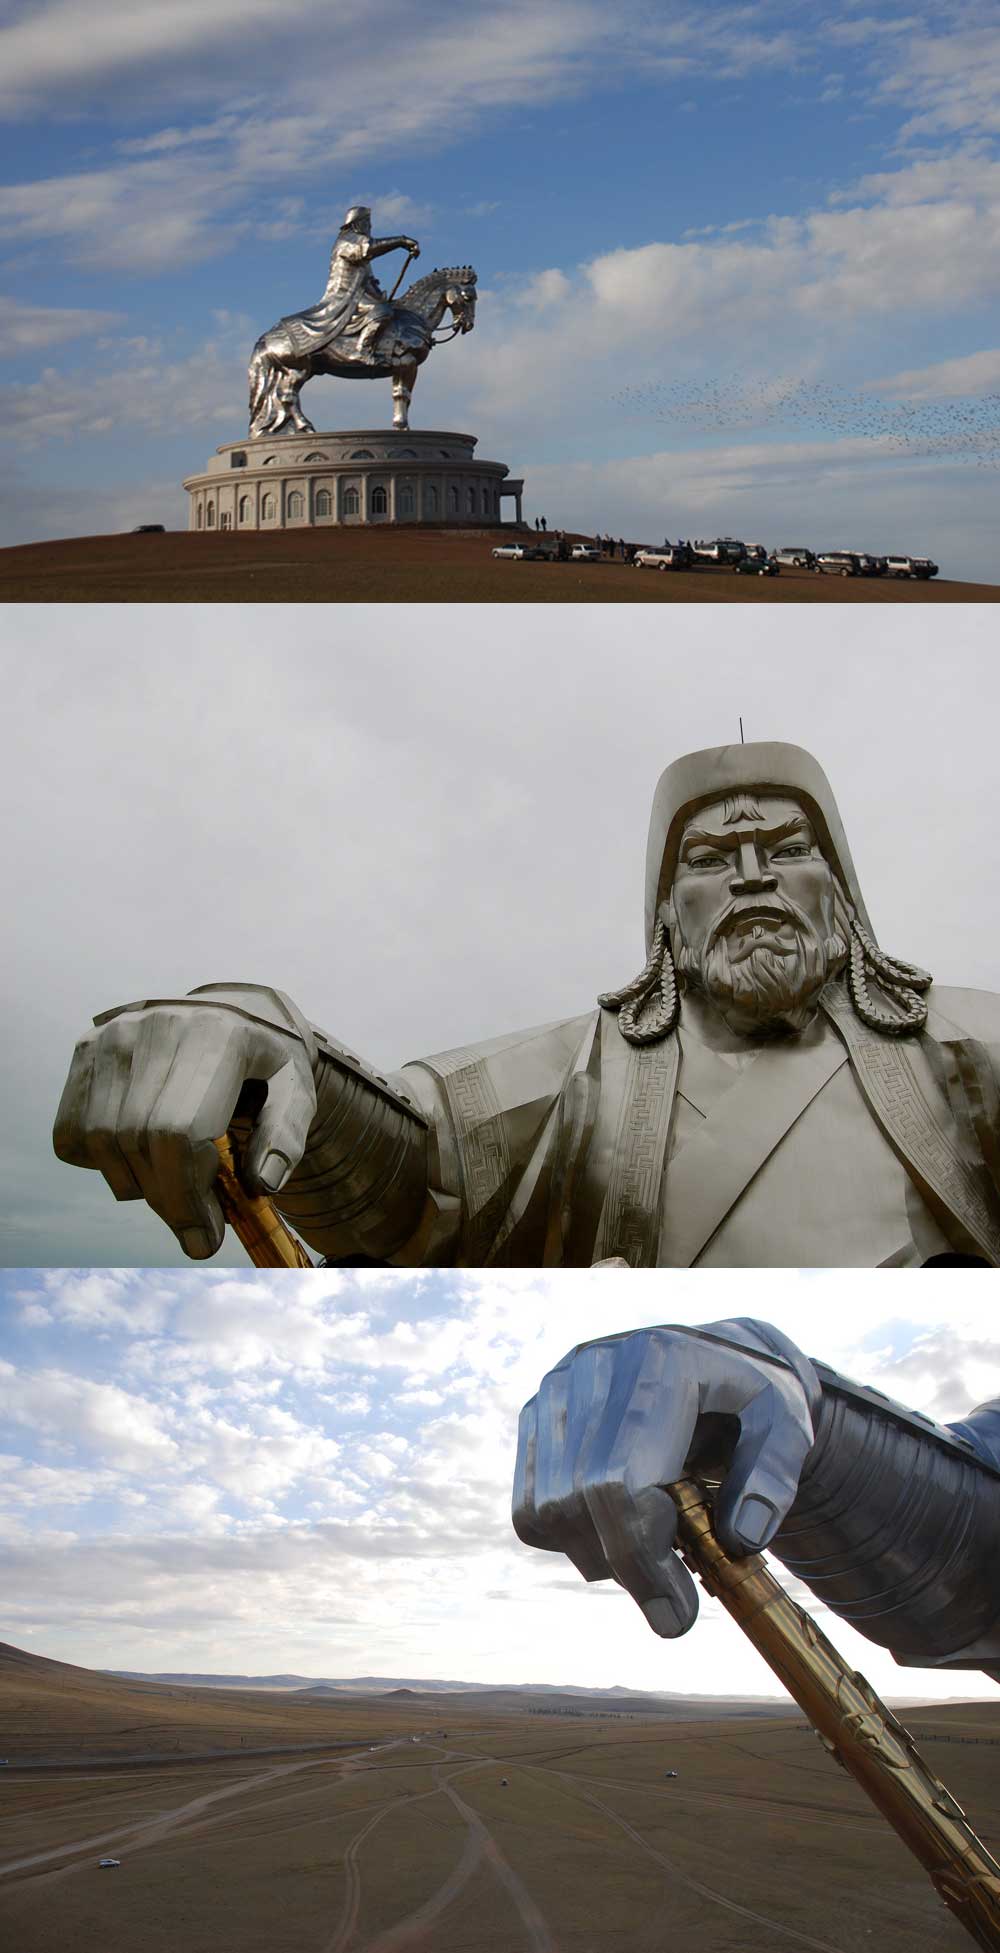 Fakta: Djengis Khan-statuen sidder på verdens højeste statue af en hest ca. 54 km fra Ulan Bator.